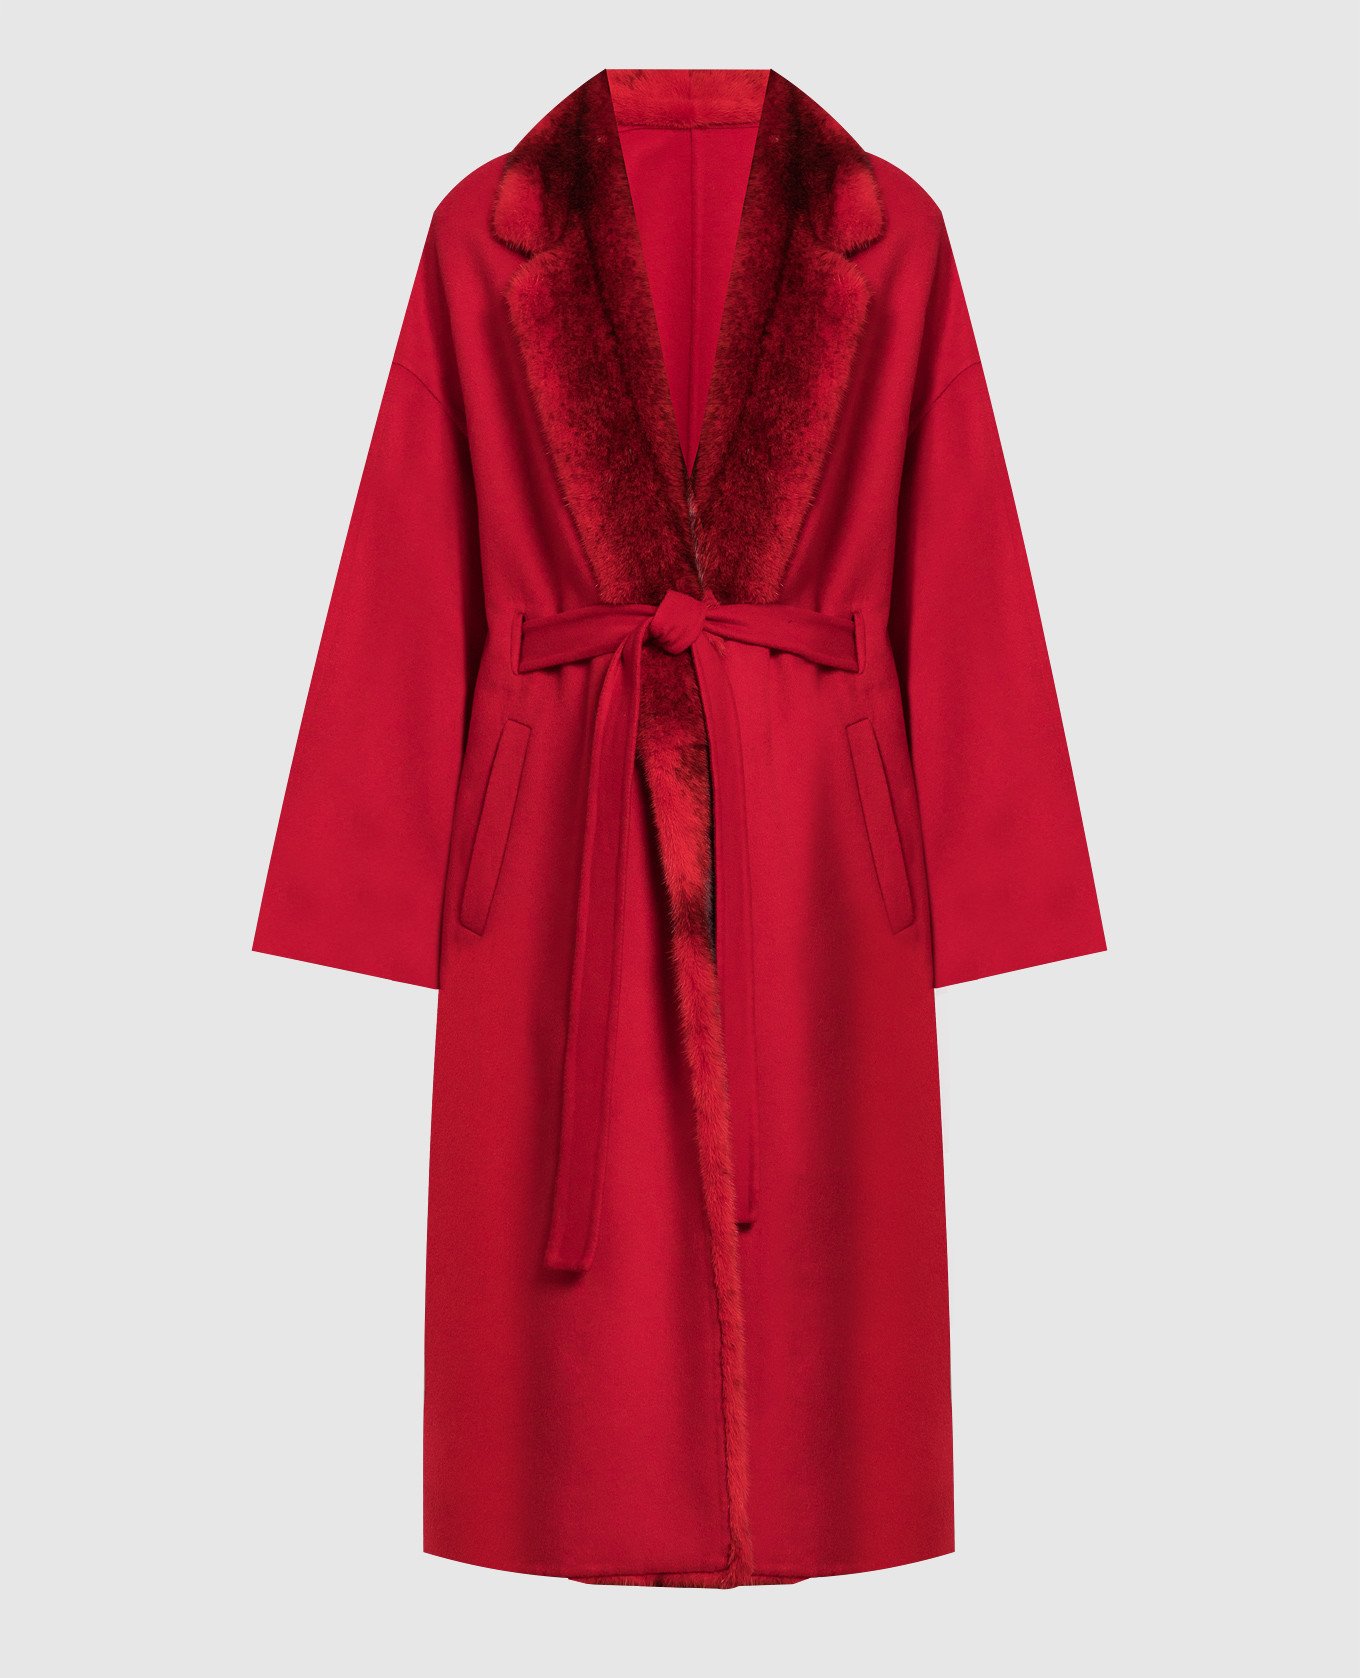 Красное пальто из кашемира и шерсти с мехом норки.